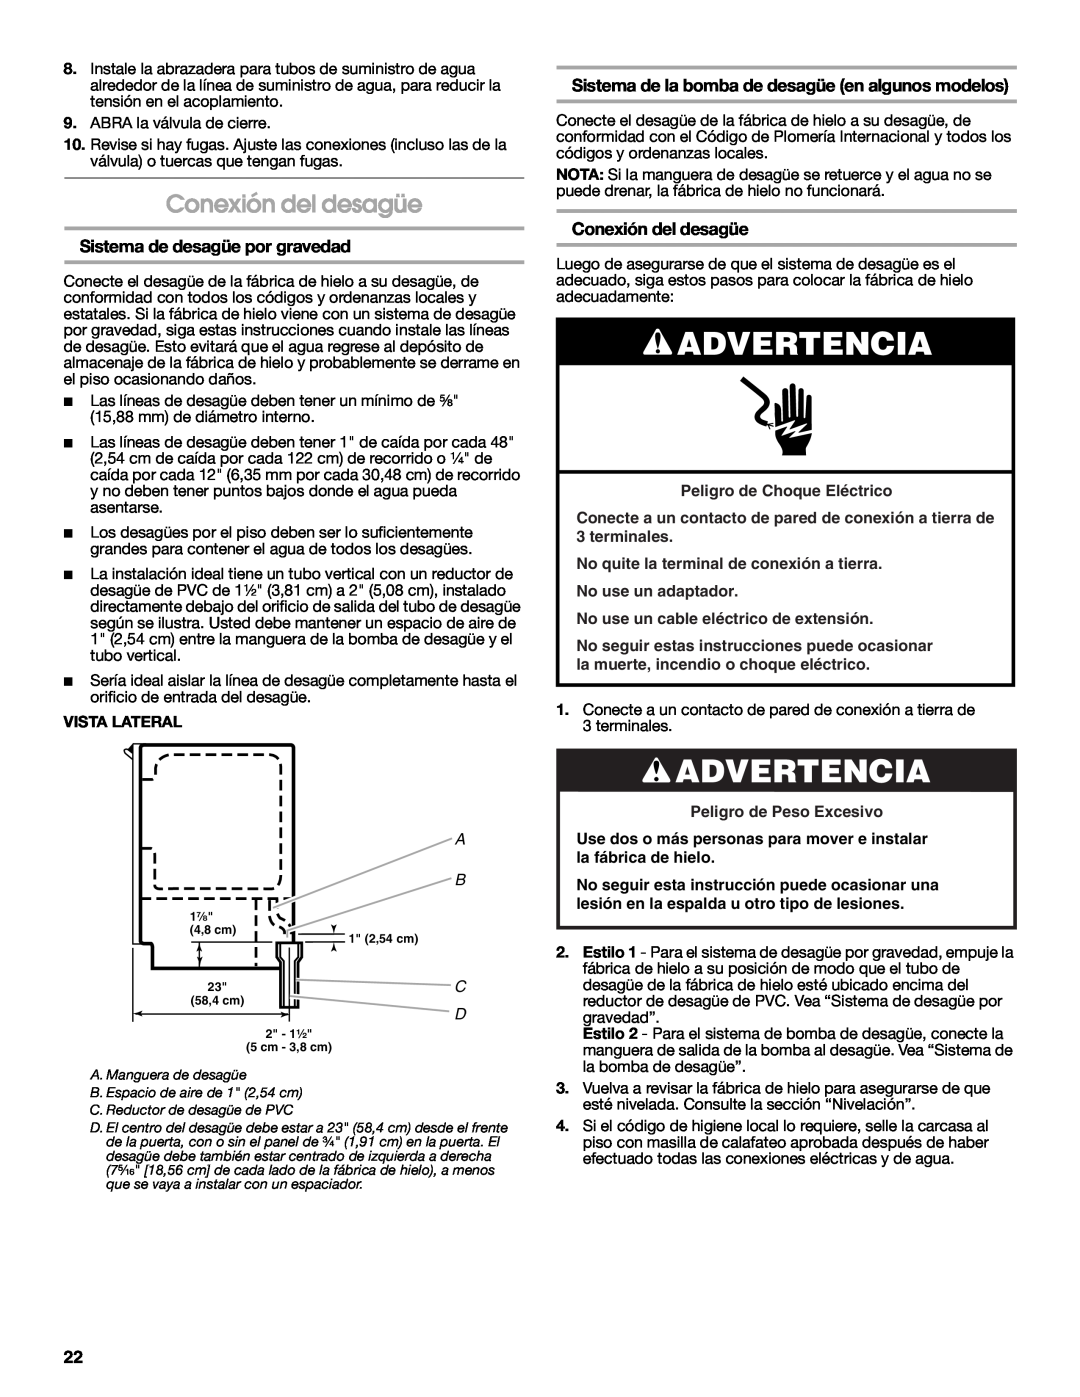 Jenn-Air W10282143B manual Conexión del desagüe, Sistema de desagüe por gravedad, Advertencia, Peligro de Choque Eléctrico 